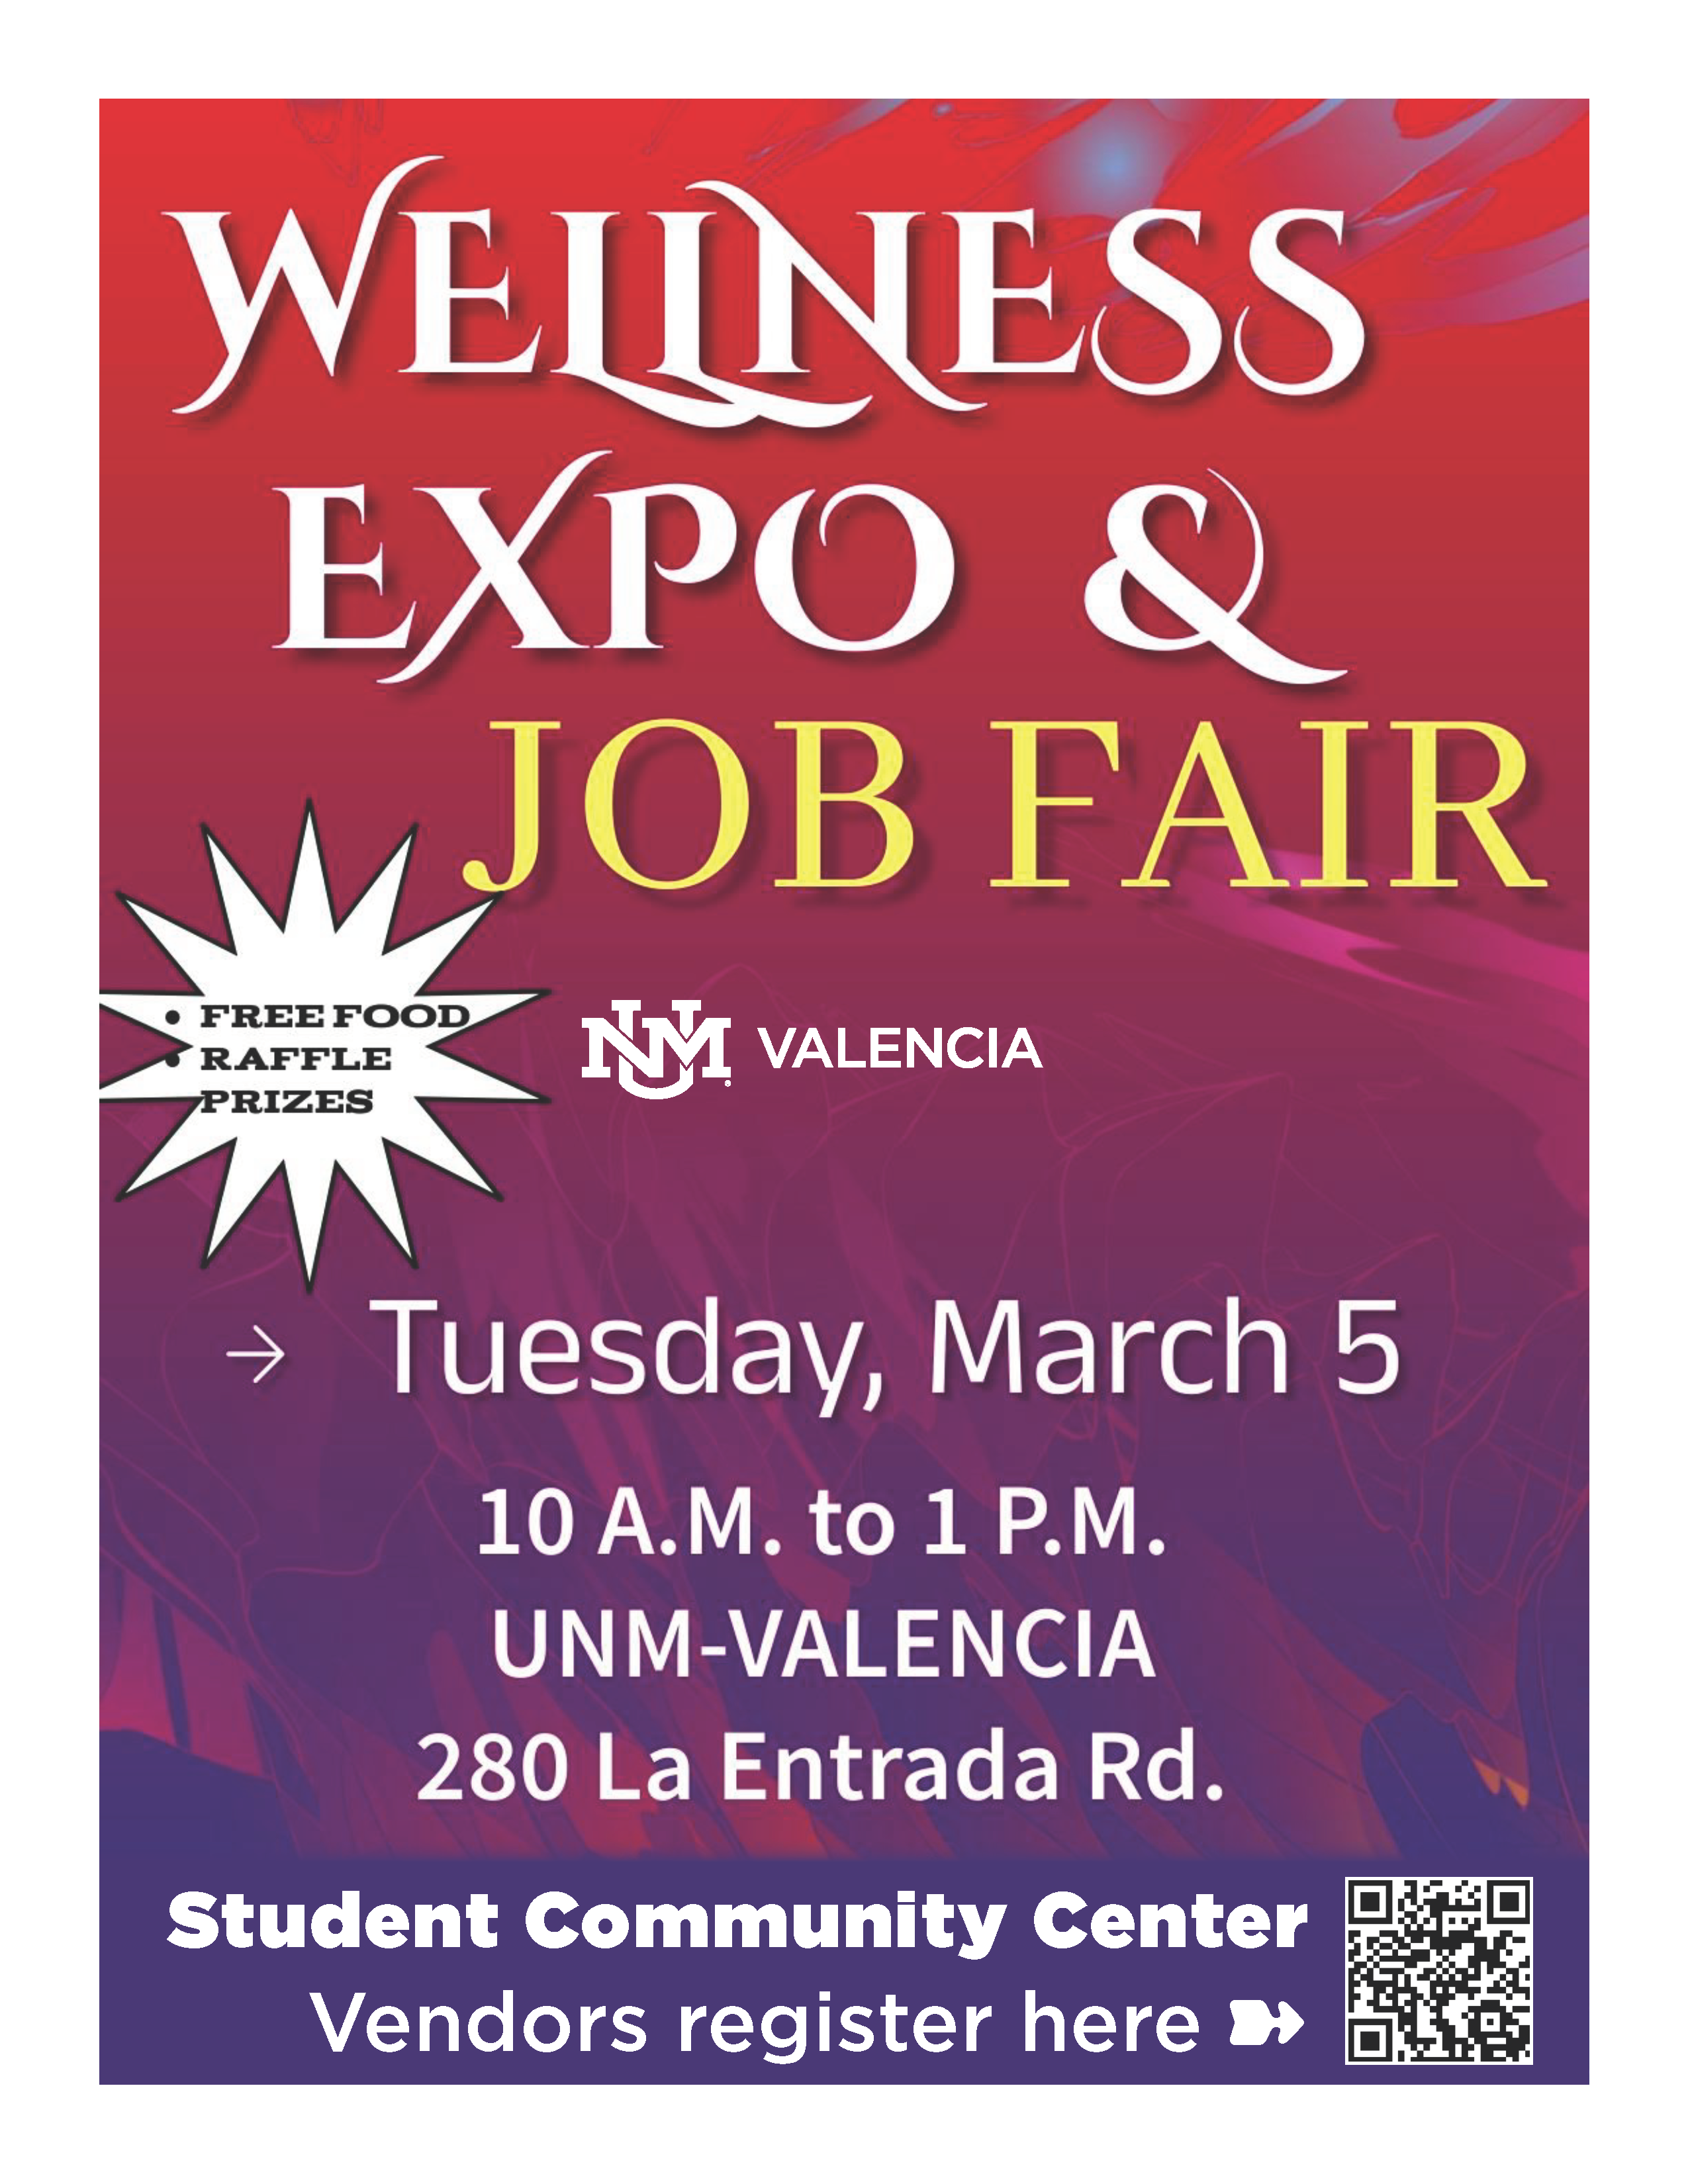 Wellness Expo and Job Fair UNM Valencia flyer